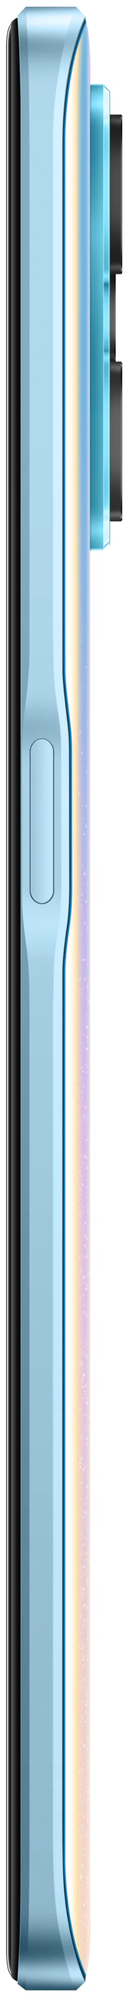 Смартфон Realme 9 Pro 5G RMX3472 128ГБ, синий (6042847) (плохая упаковка) - фото №6